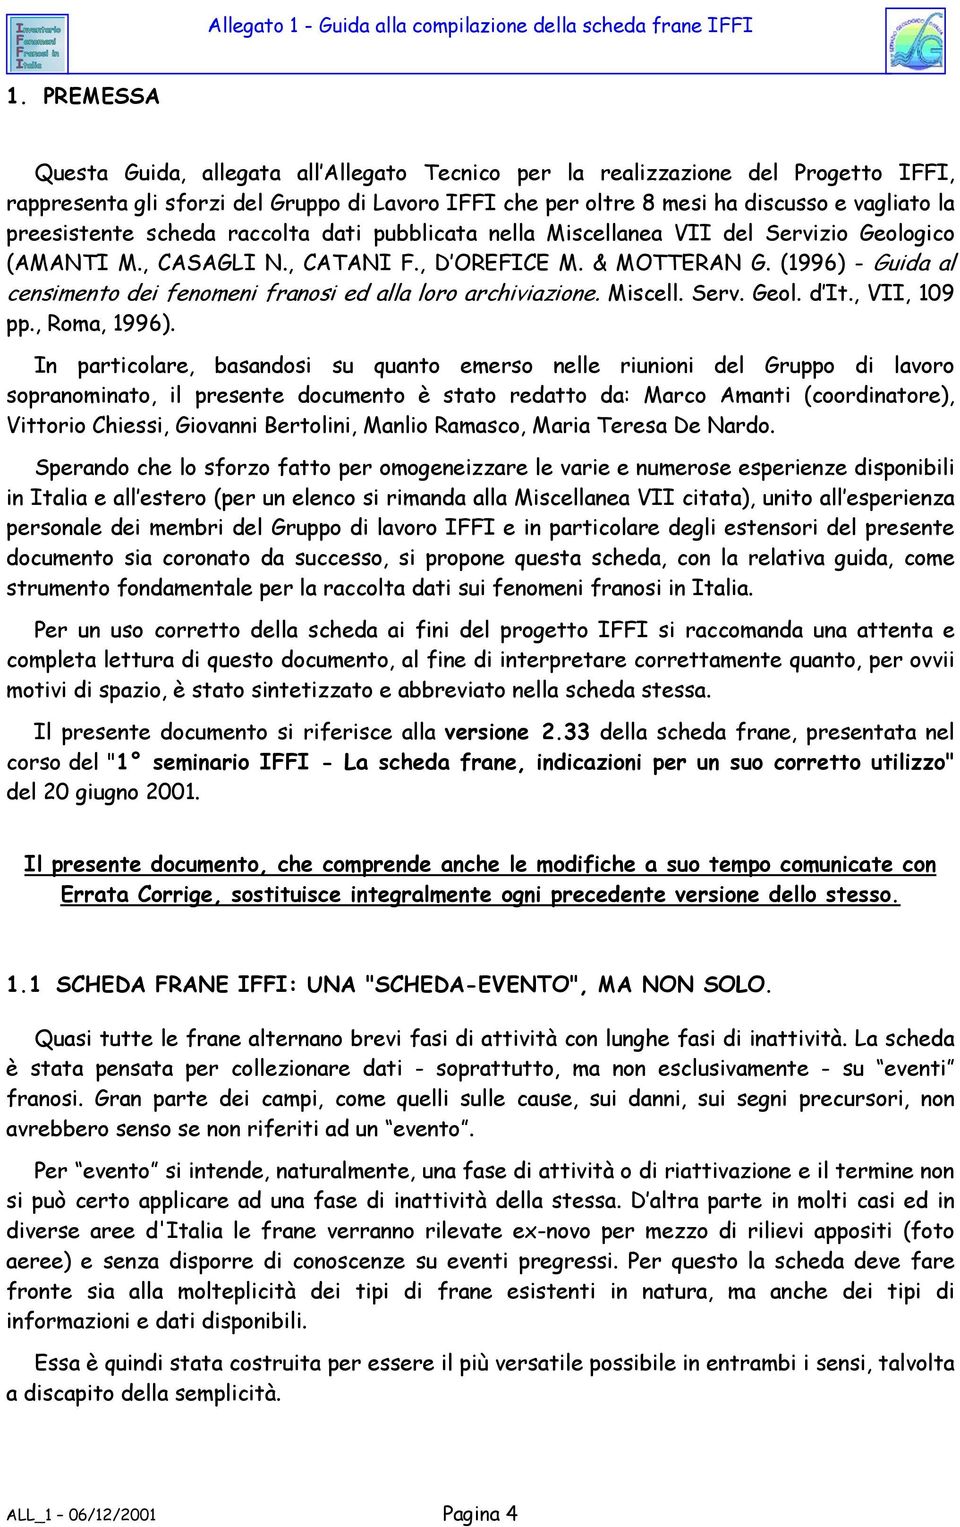 (1996) - Guida al censimento dei fenomeni franosi ed alla loro archiviazione. Miscell. Serv. Geol. d It., VII, 109 pp., Roma, 1996).